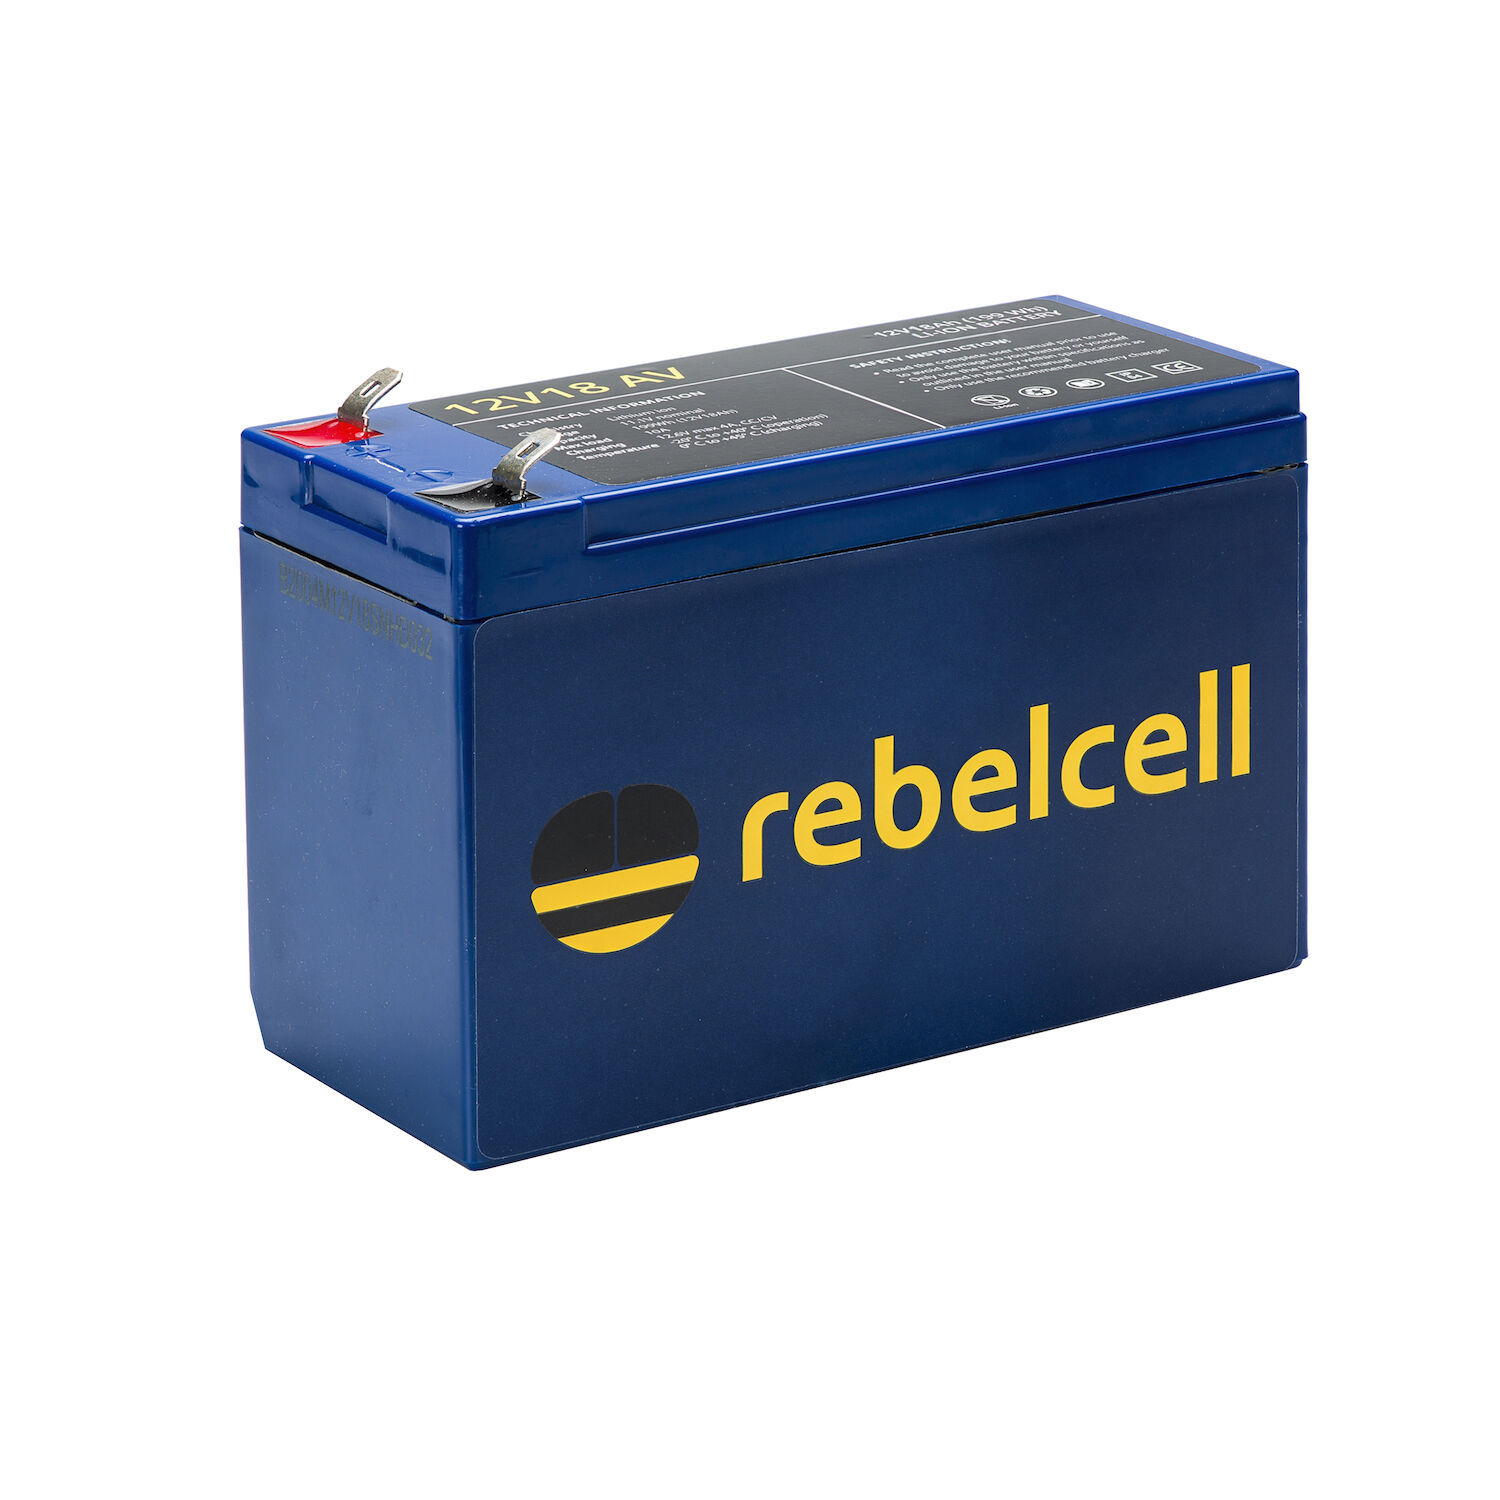 RebelCell 12V18 AV Lithium Batterie (12V 18Ah) 199Wh